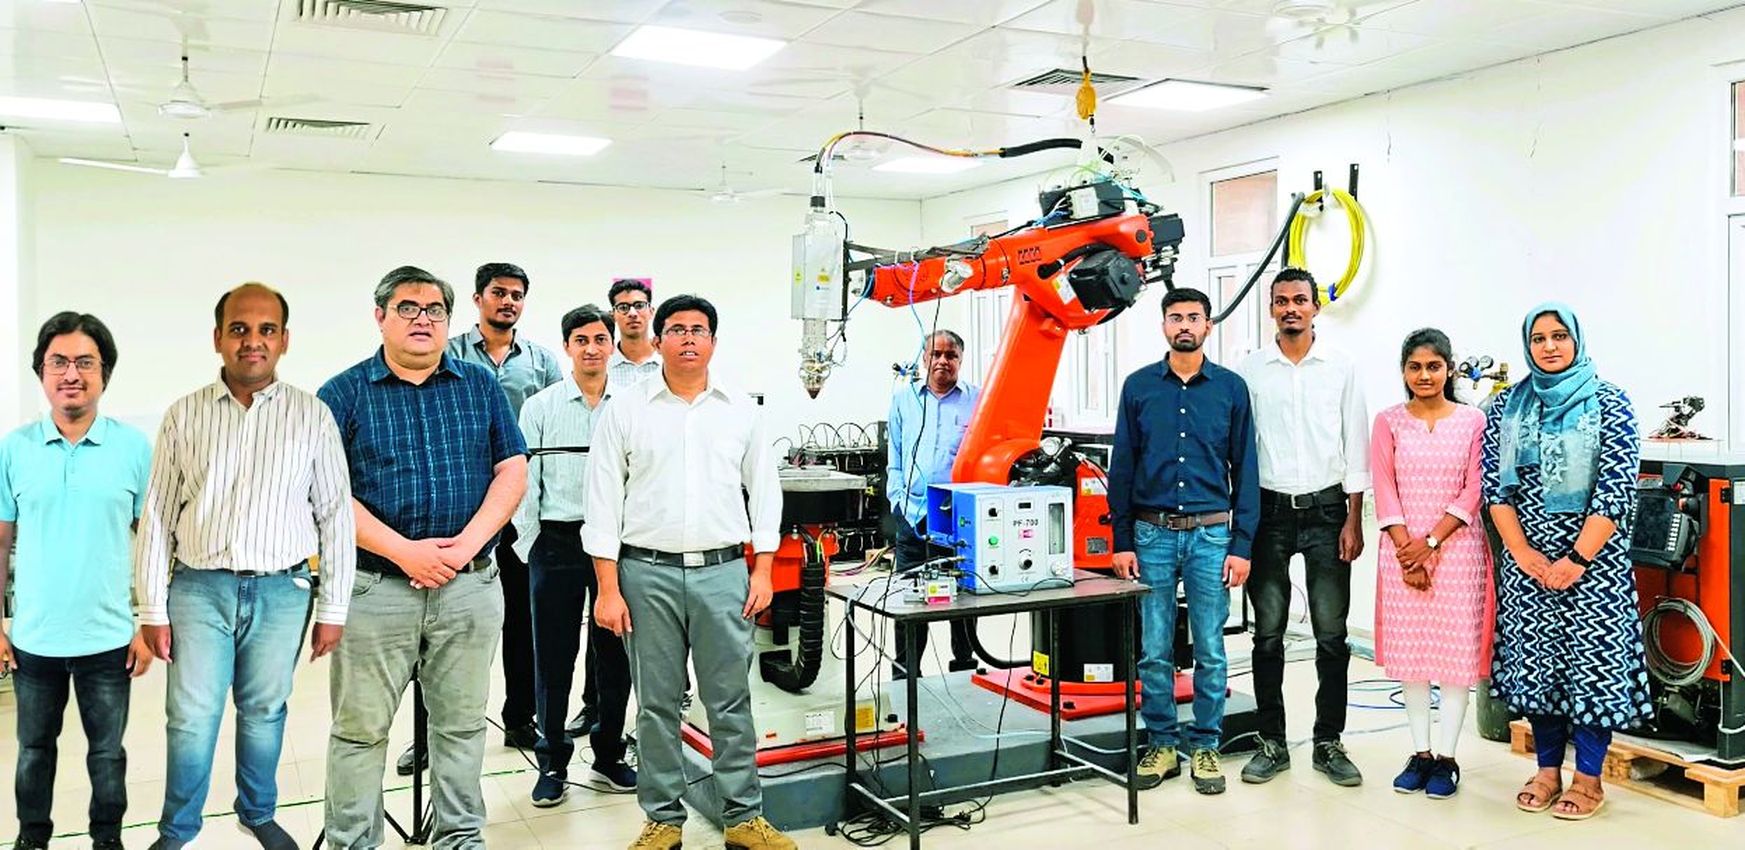 3D printer: देश में पहली बार बना 3डी प्रिंटर, आइआइटी जोधपुर को मिली बड़ी सफलता